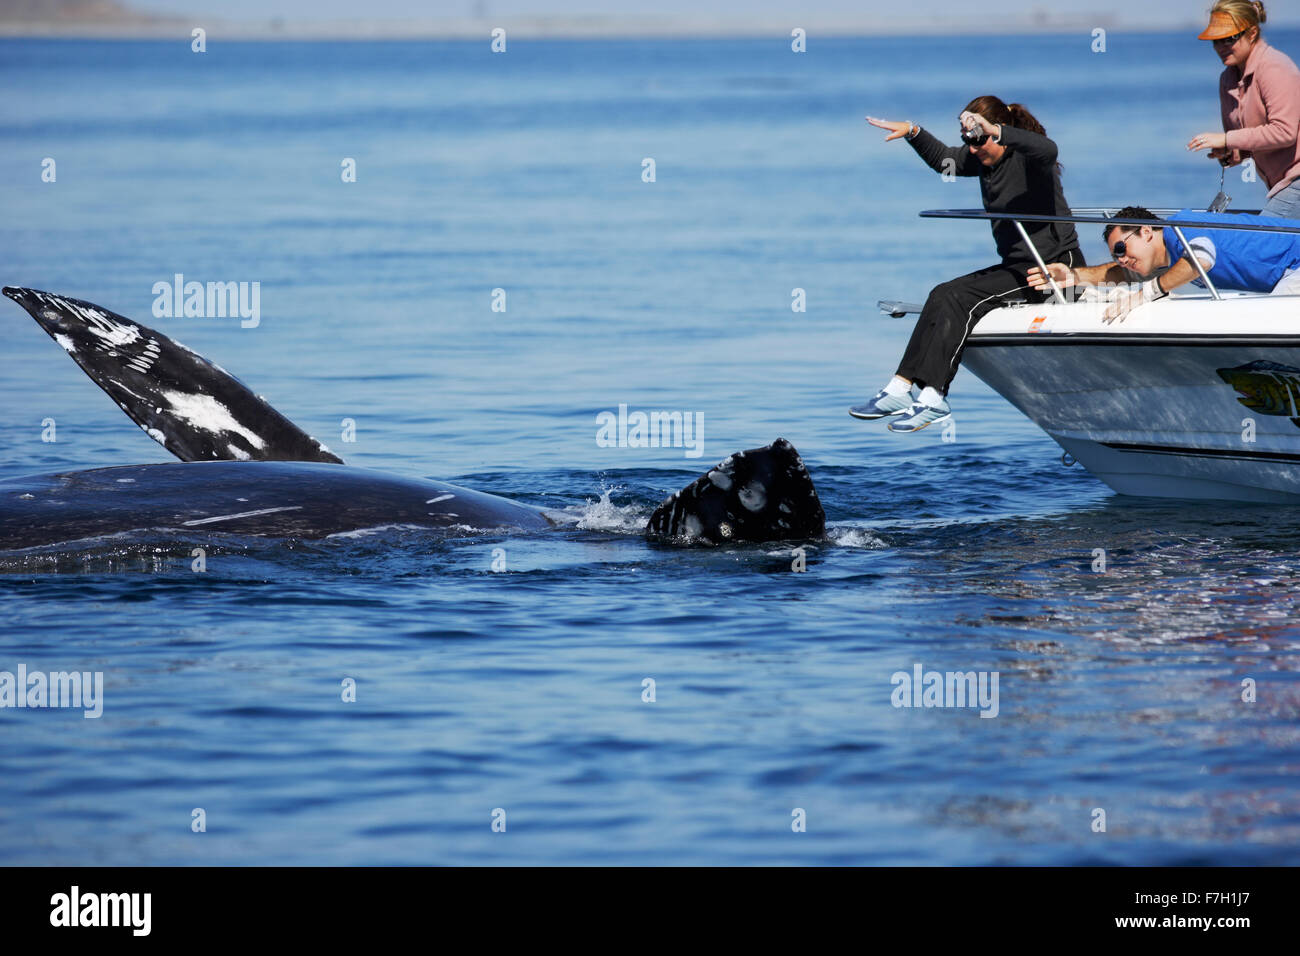 Pr0044-D. La baleine grise (Eschrichtius robustus) à l'envers, apparemment l'interaction avec les gens sur le bateau. Magdalena Bay, Baja, au Mexique Banque D'Images